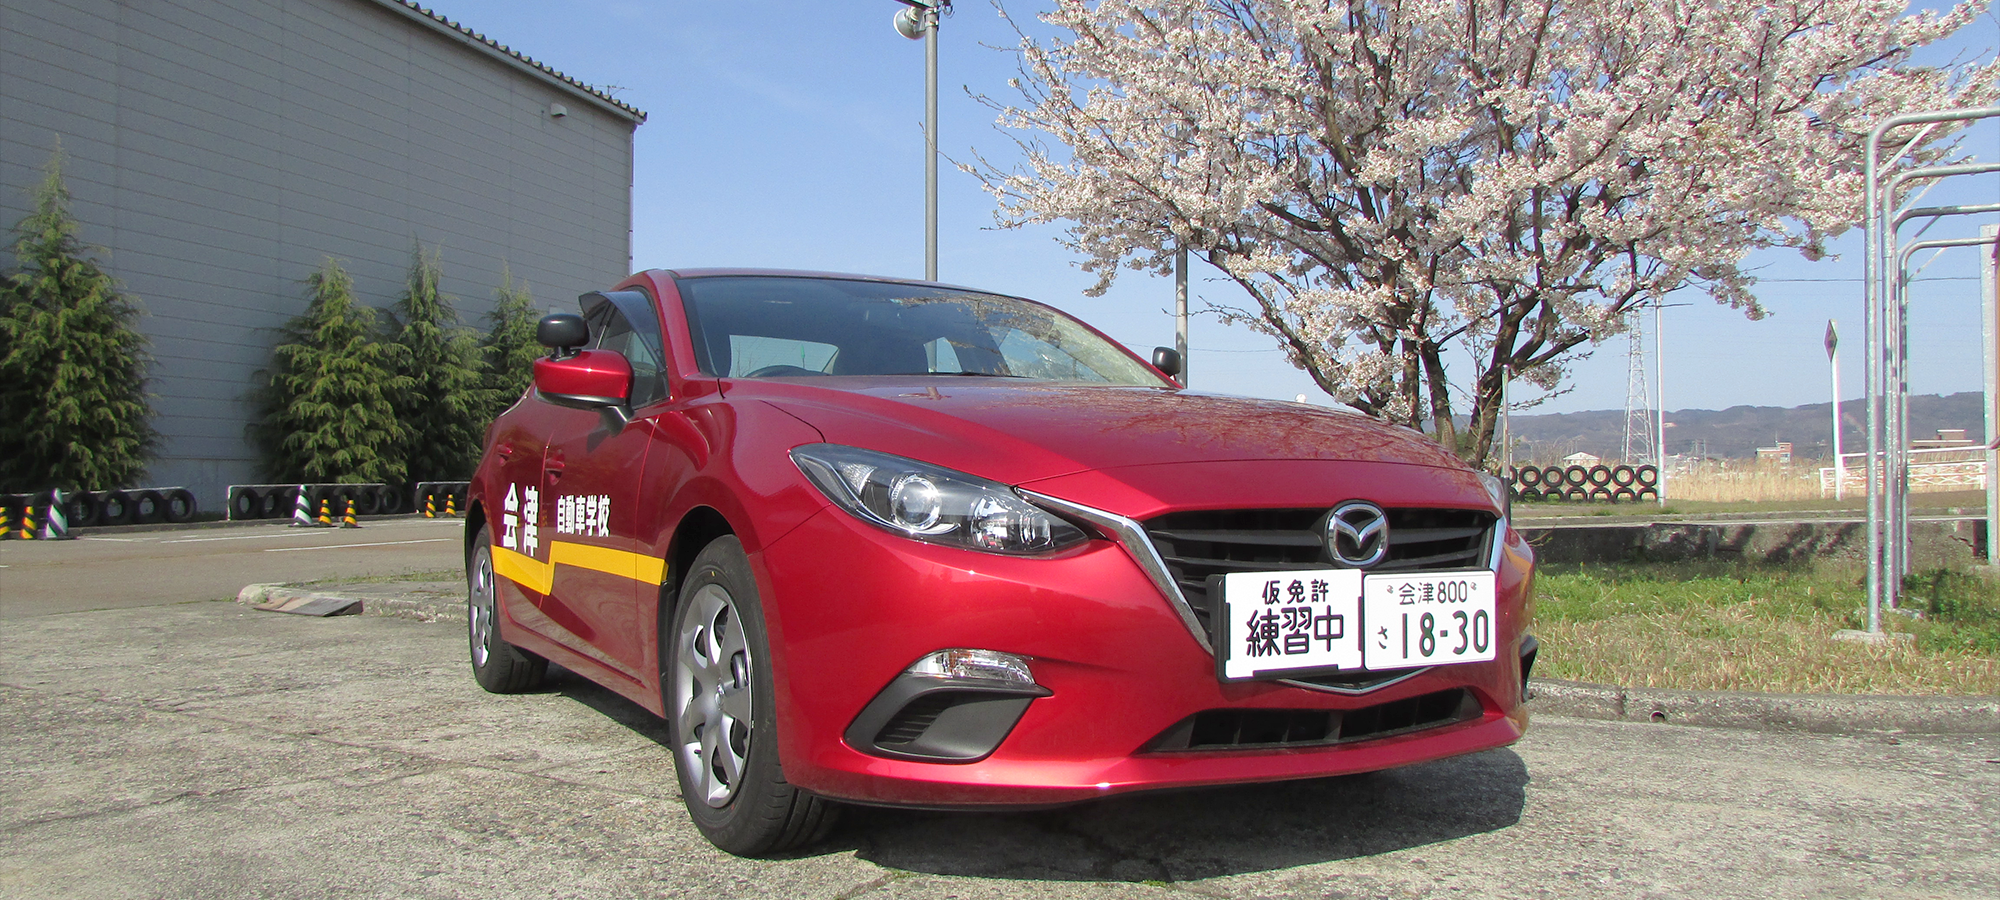 会津自動車学校は皆様の自動車運転免許取得を応援致します